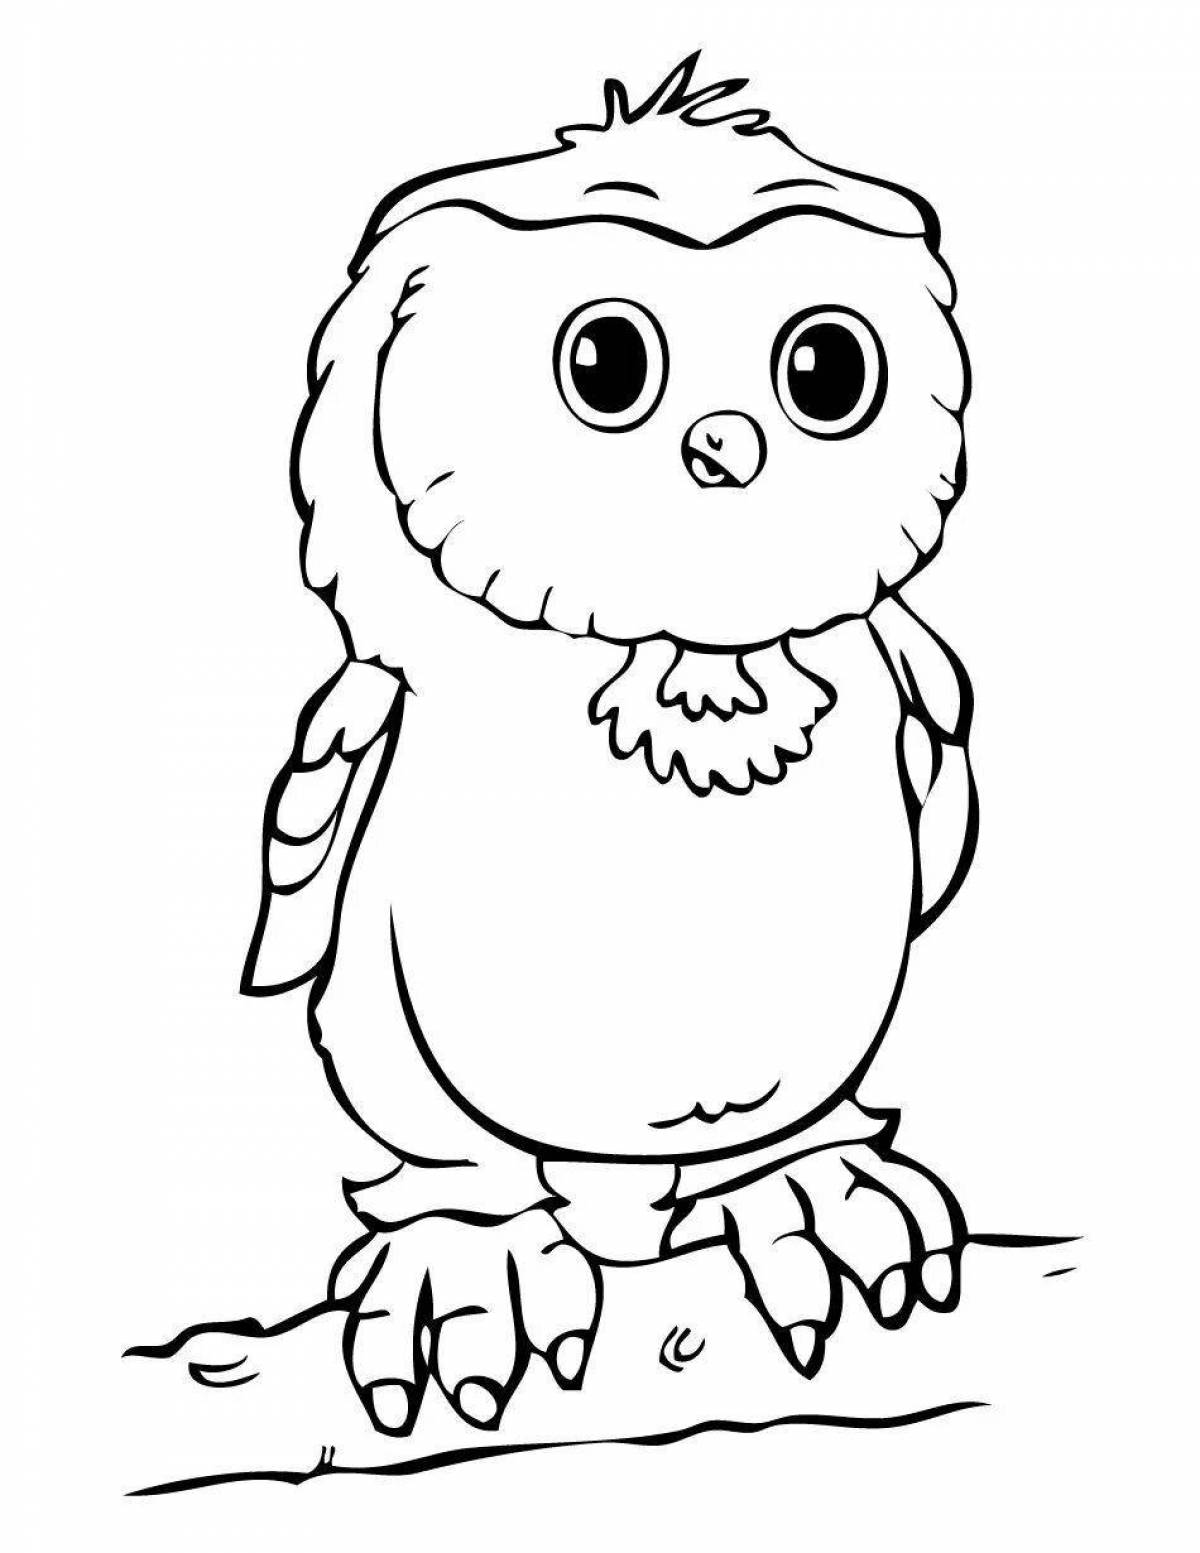 Delightful owlet coloring book for preschoolers